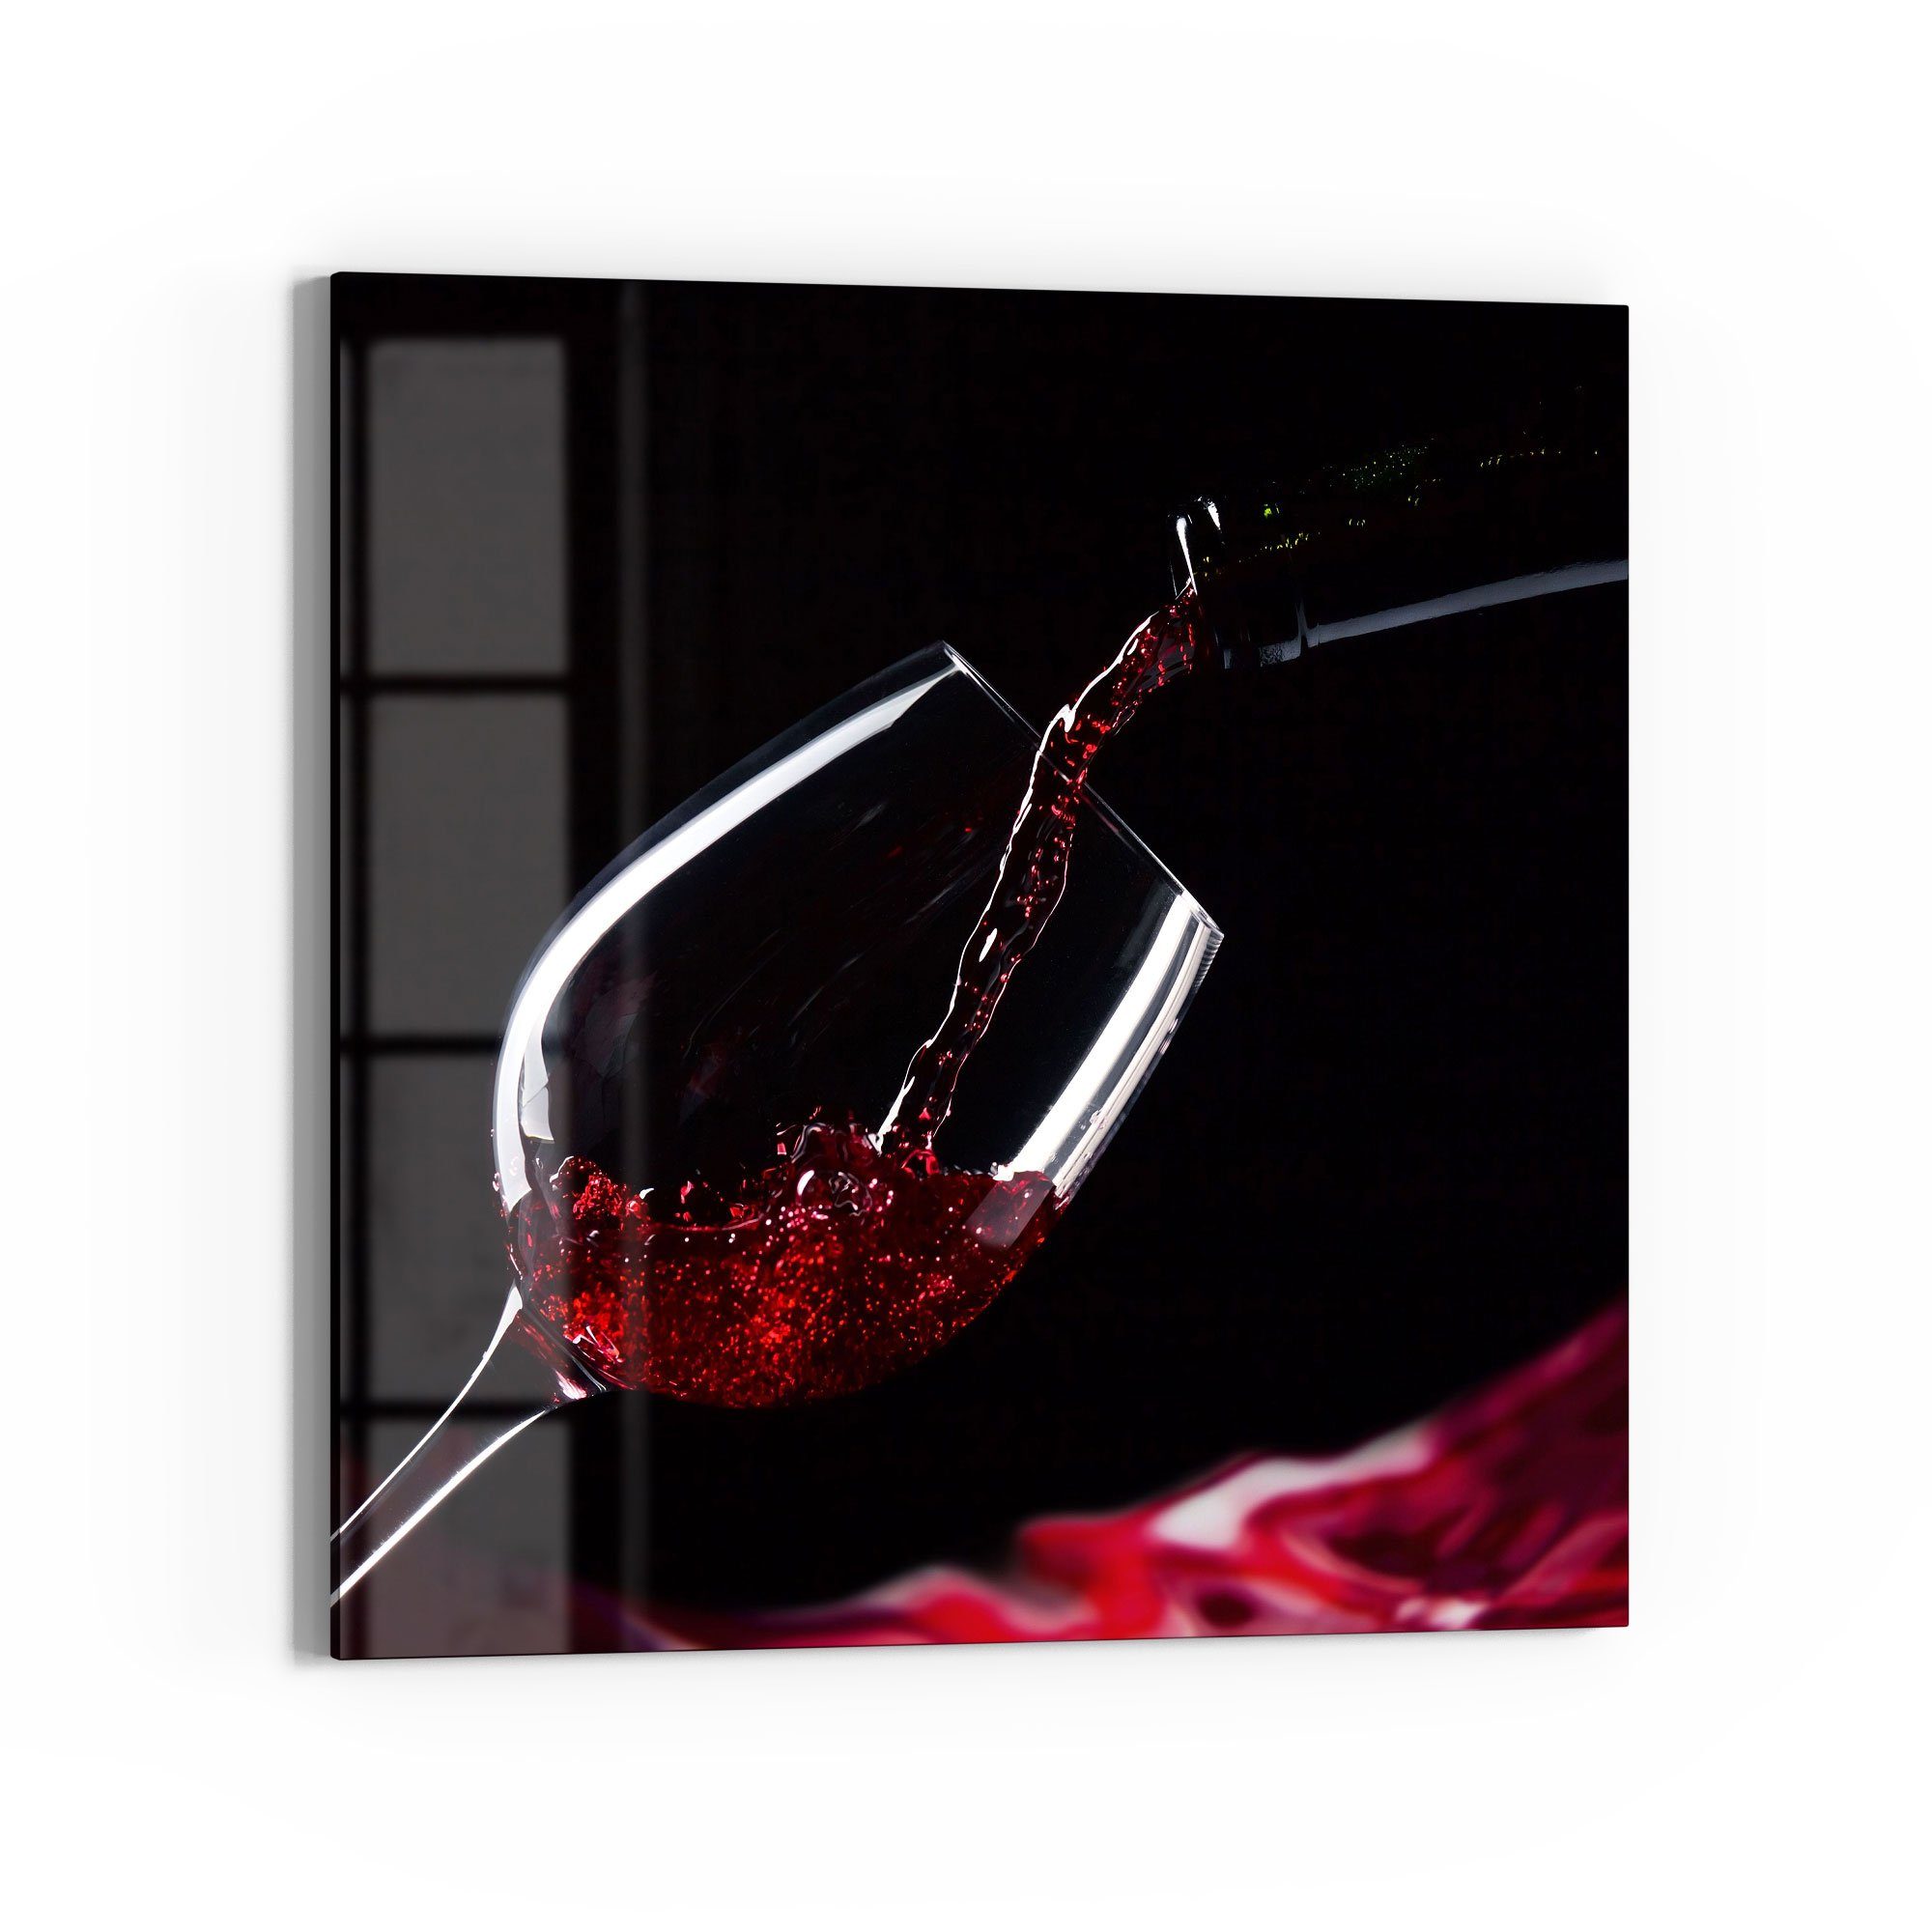 DEQORI Glasbild 'Rotwein ins Glas gegossen', 'Rotwein ins Glas gegossen', Glas Wandbild Bild schwebend modern